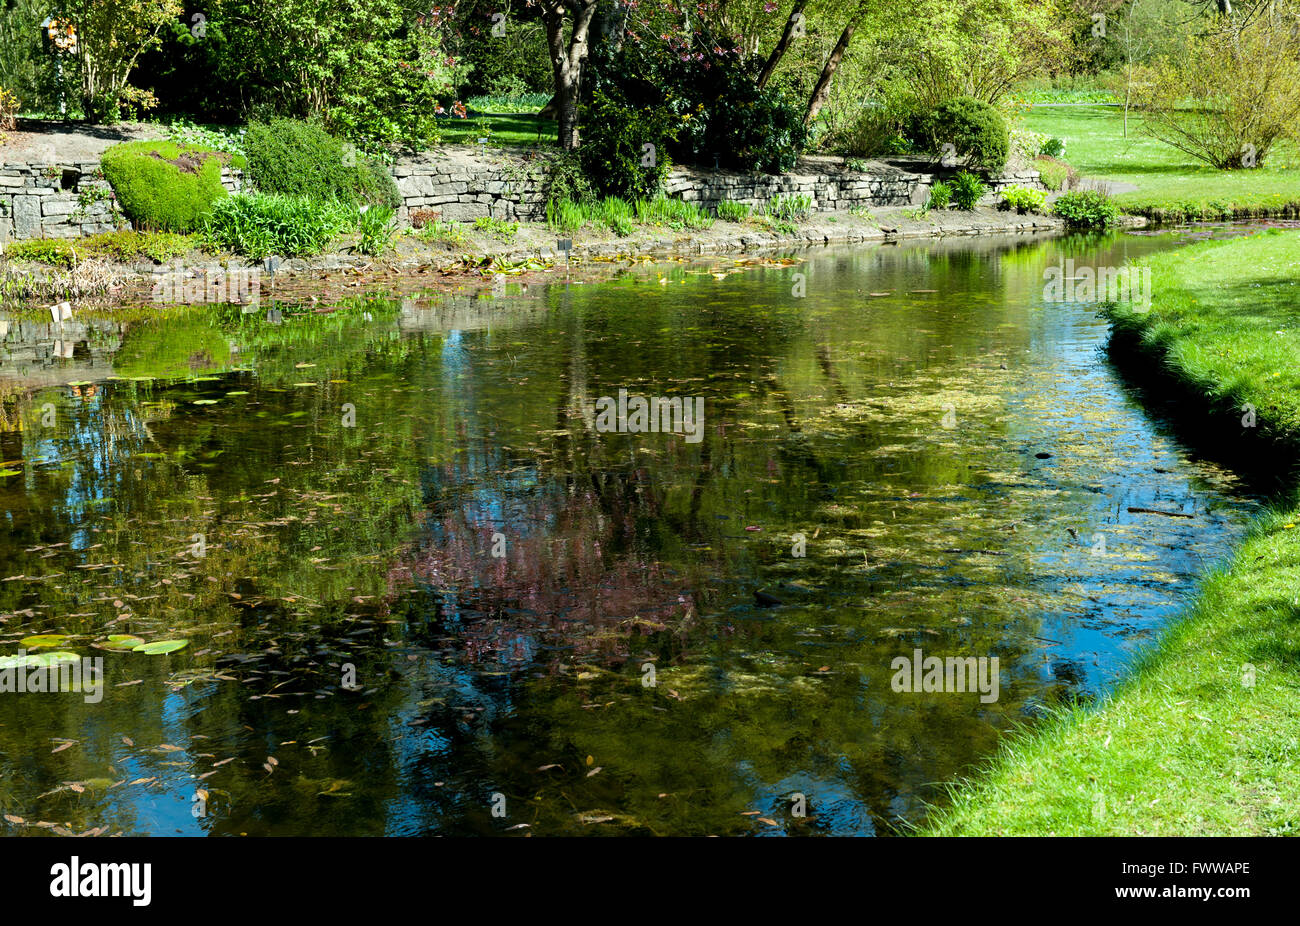 Dublin, Irland -21, April 2015: Die wichtigsten Teich von The National Botanic Gardens am 21. April 2015 in Dublin, Irland. Schöne Stockfoto